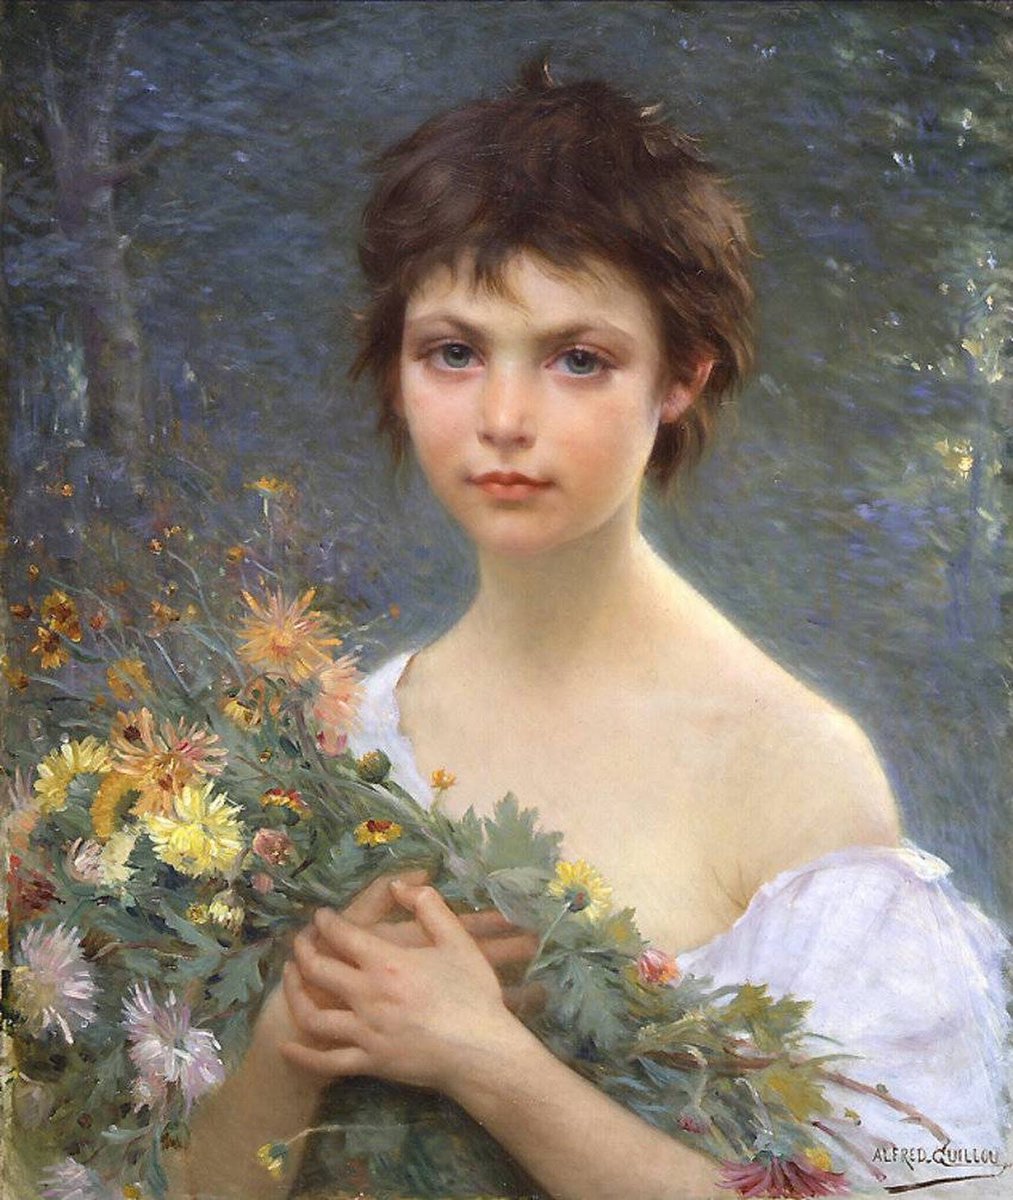 'Ramo de la mañana', del pintor francés Alfred Guillou (1844 - 1926).